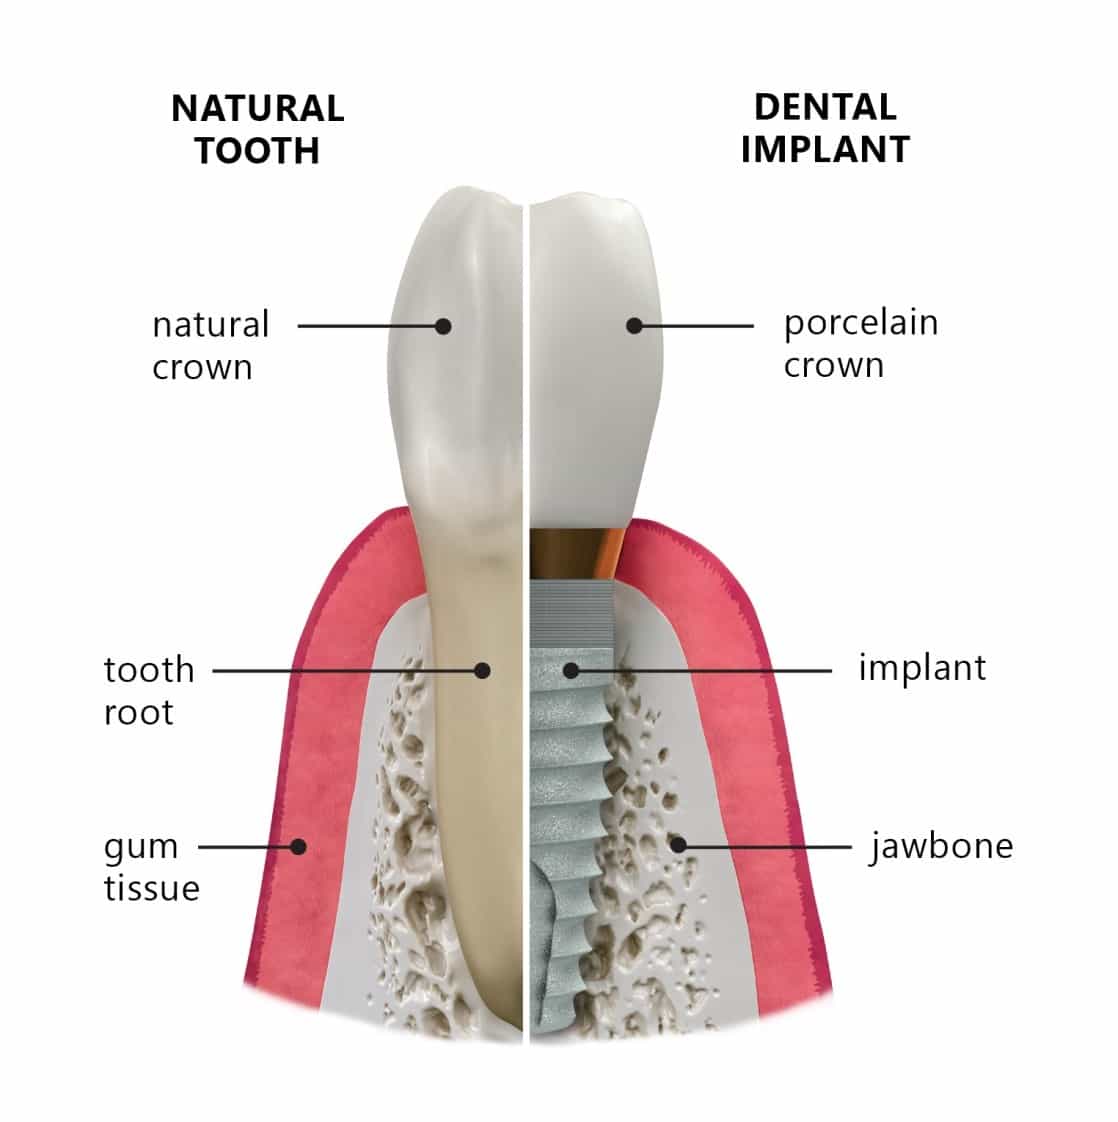 نوعية الأسنان التي تتم زراعتها